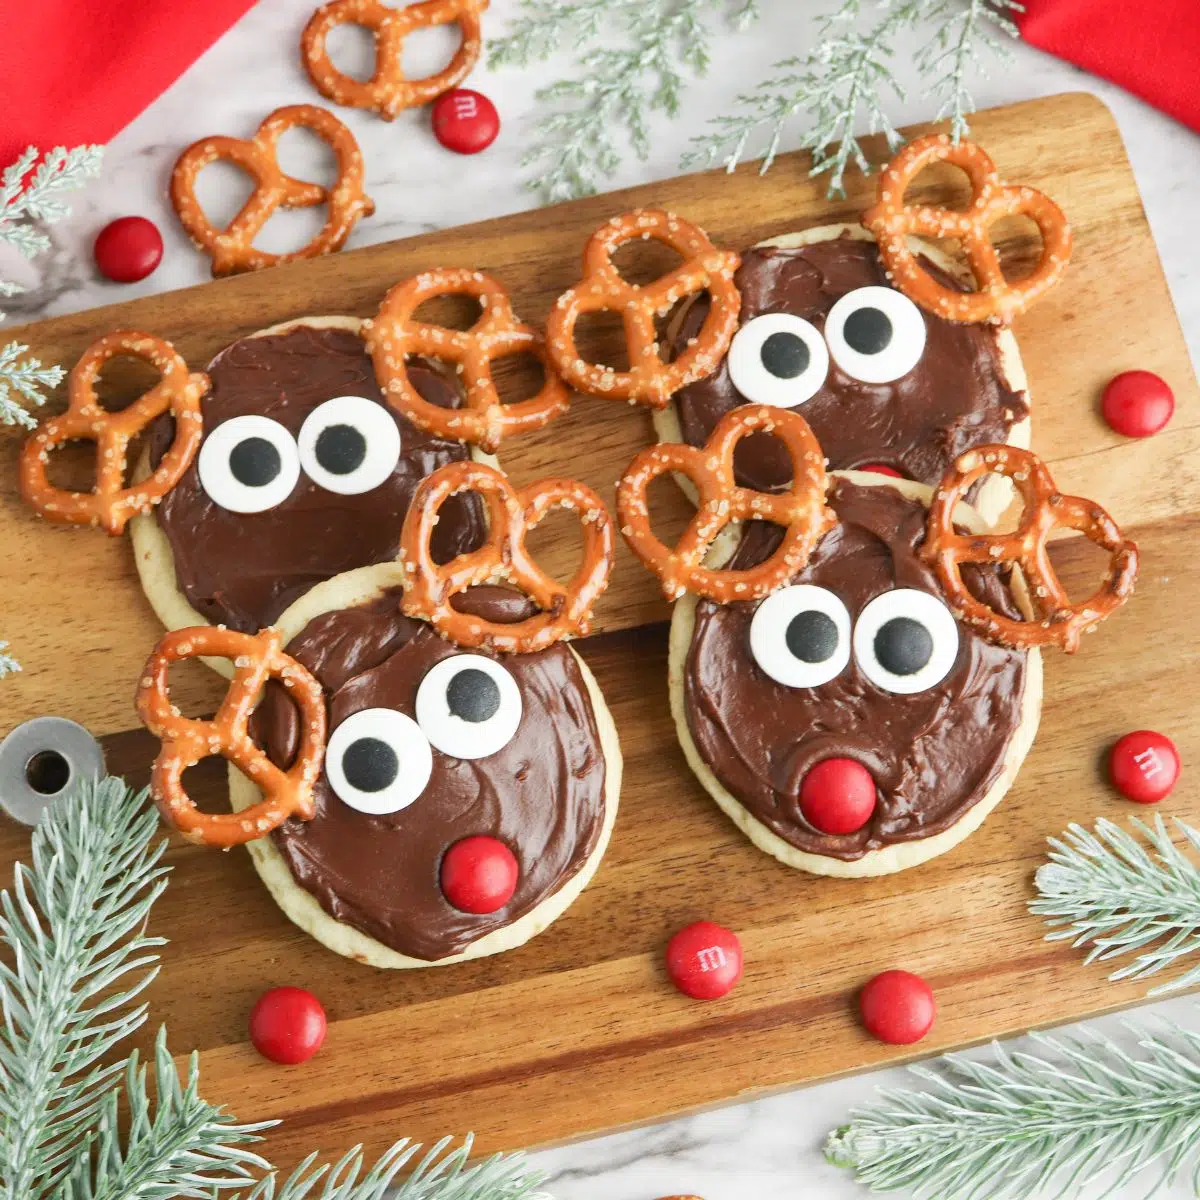 Sugar cookies decorated as reindeers.